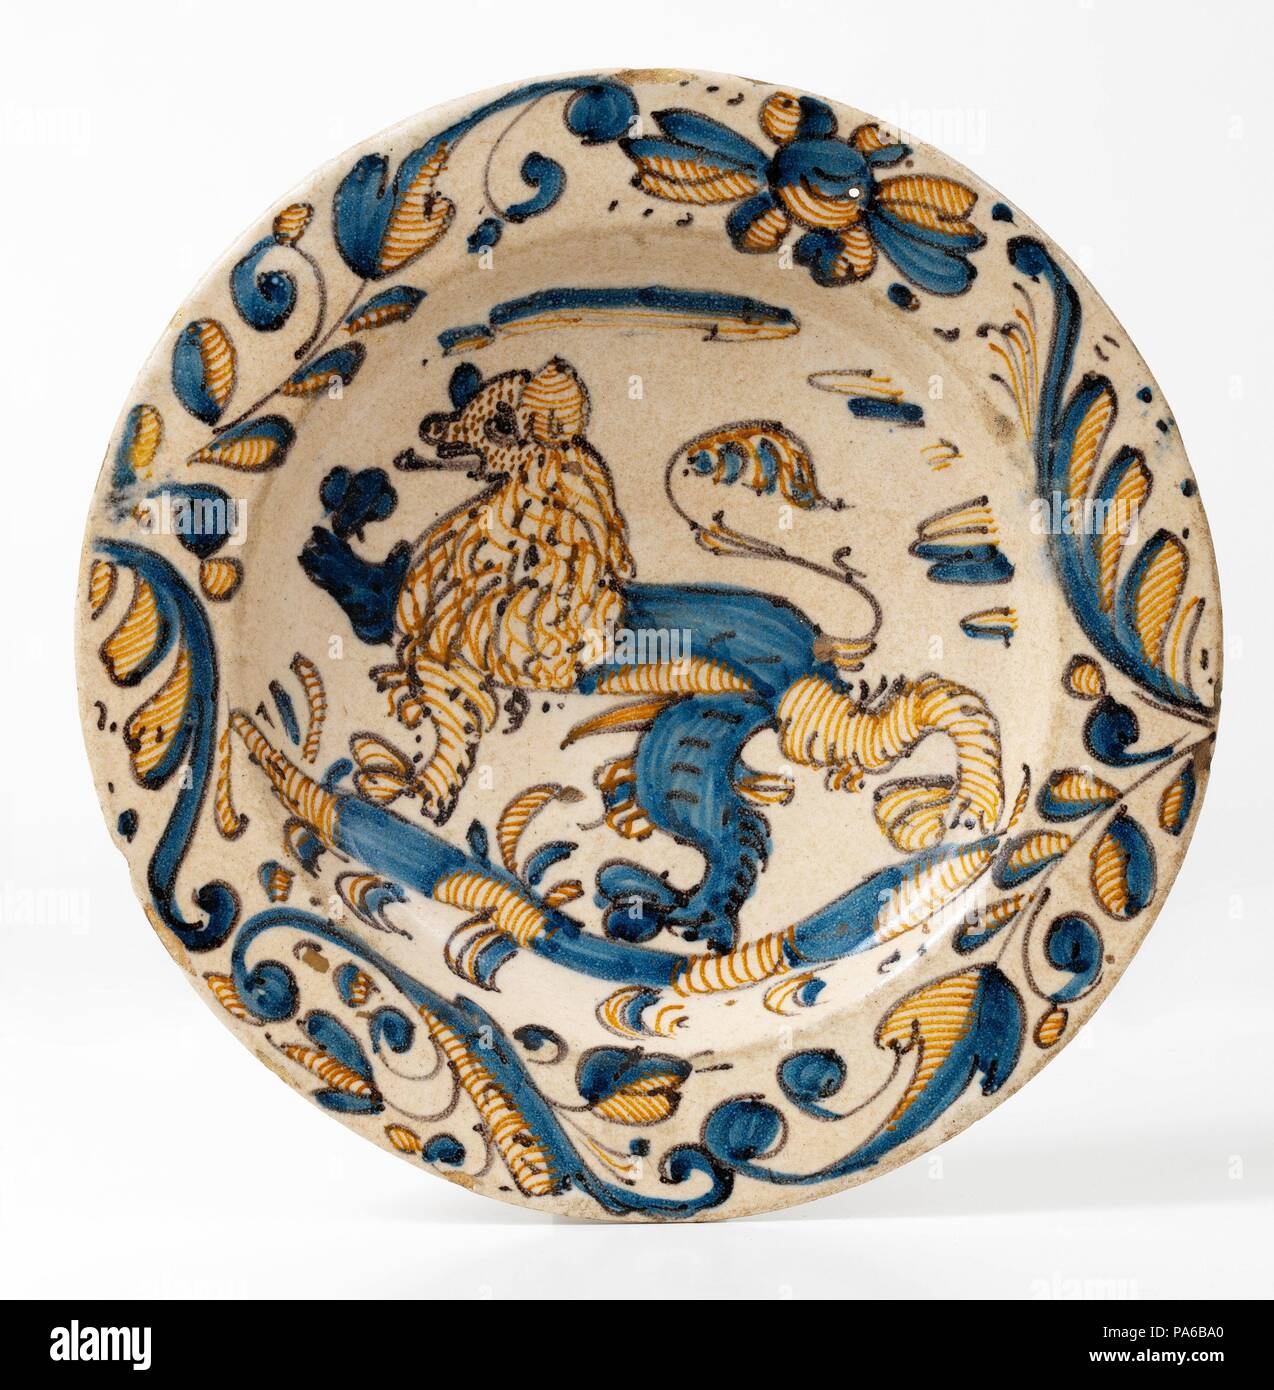 Platte, späten sechzehnten Jahrhundert - 17. Jahrhundert, Keramik  (Dreifarbige Serie, Geschirr in Blau, Orange und Schwarz gehalten und mit  einem Löwen von pflanzlichen Motiven umgeben), Talavera de la Reina oder  Puente la